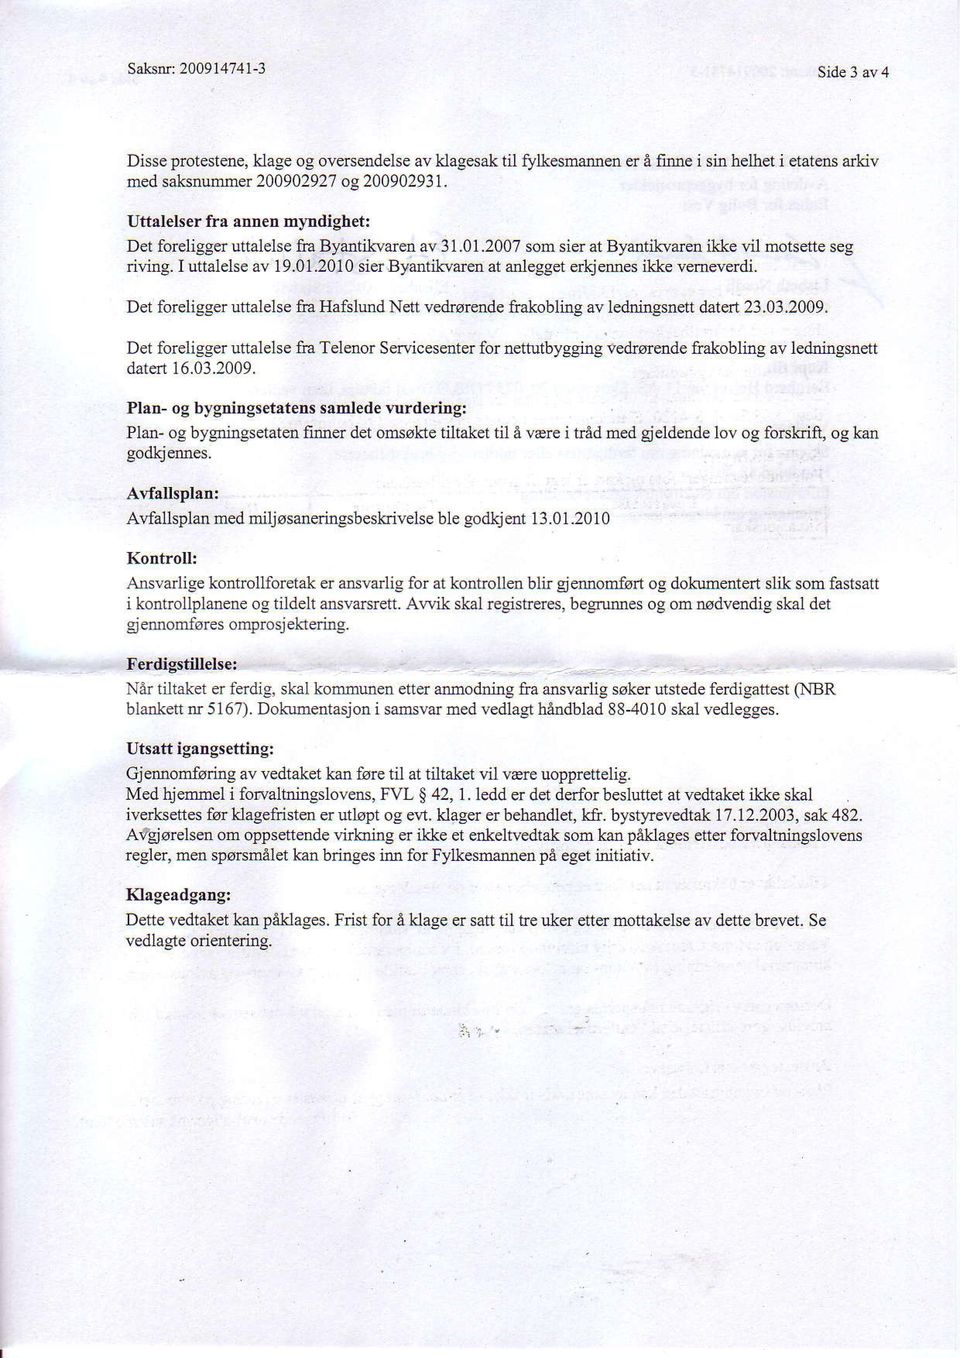 Det foreligger uttalelse fra Hafslund Nett vedsarende frakobling av ledningsnett datert 23.03.2009.